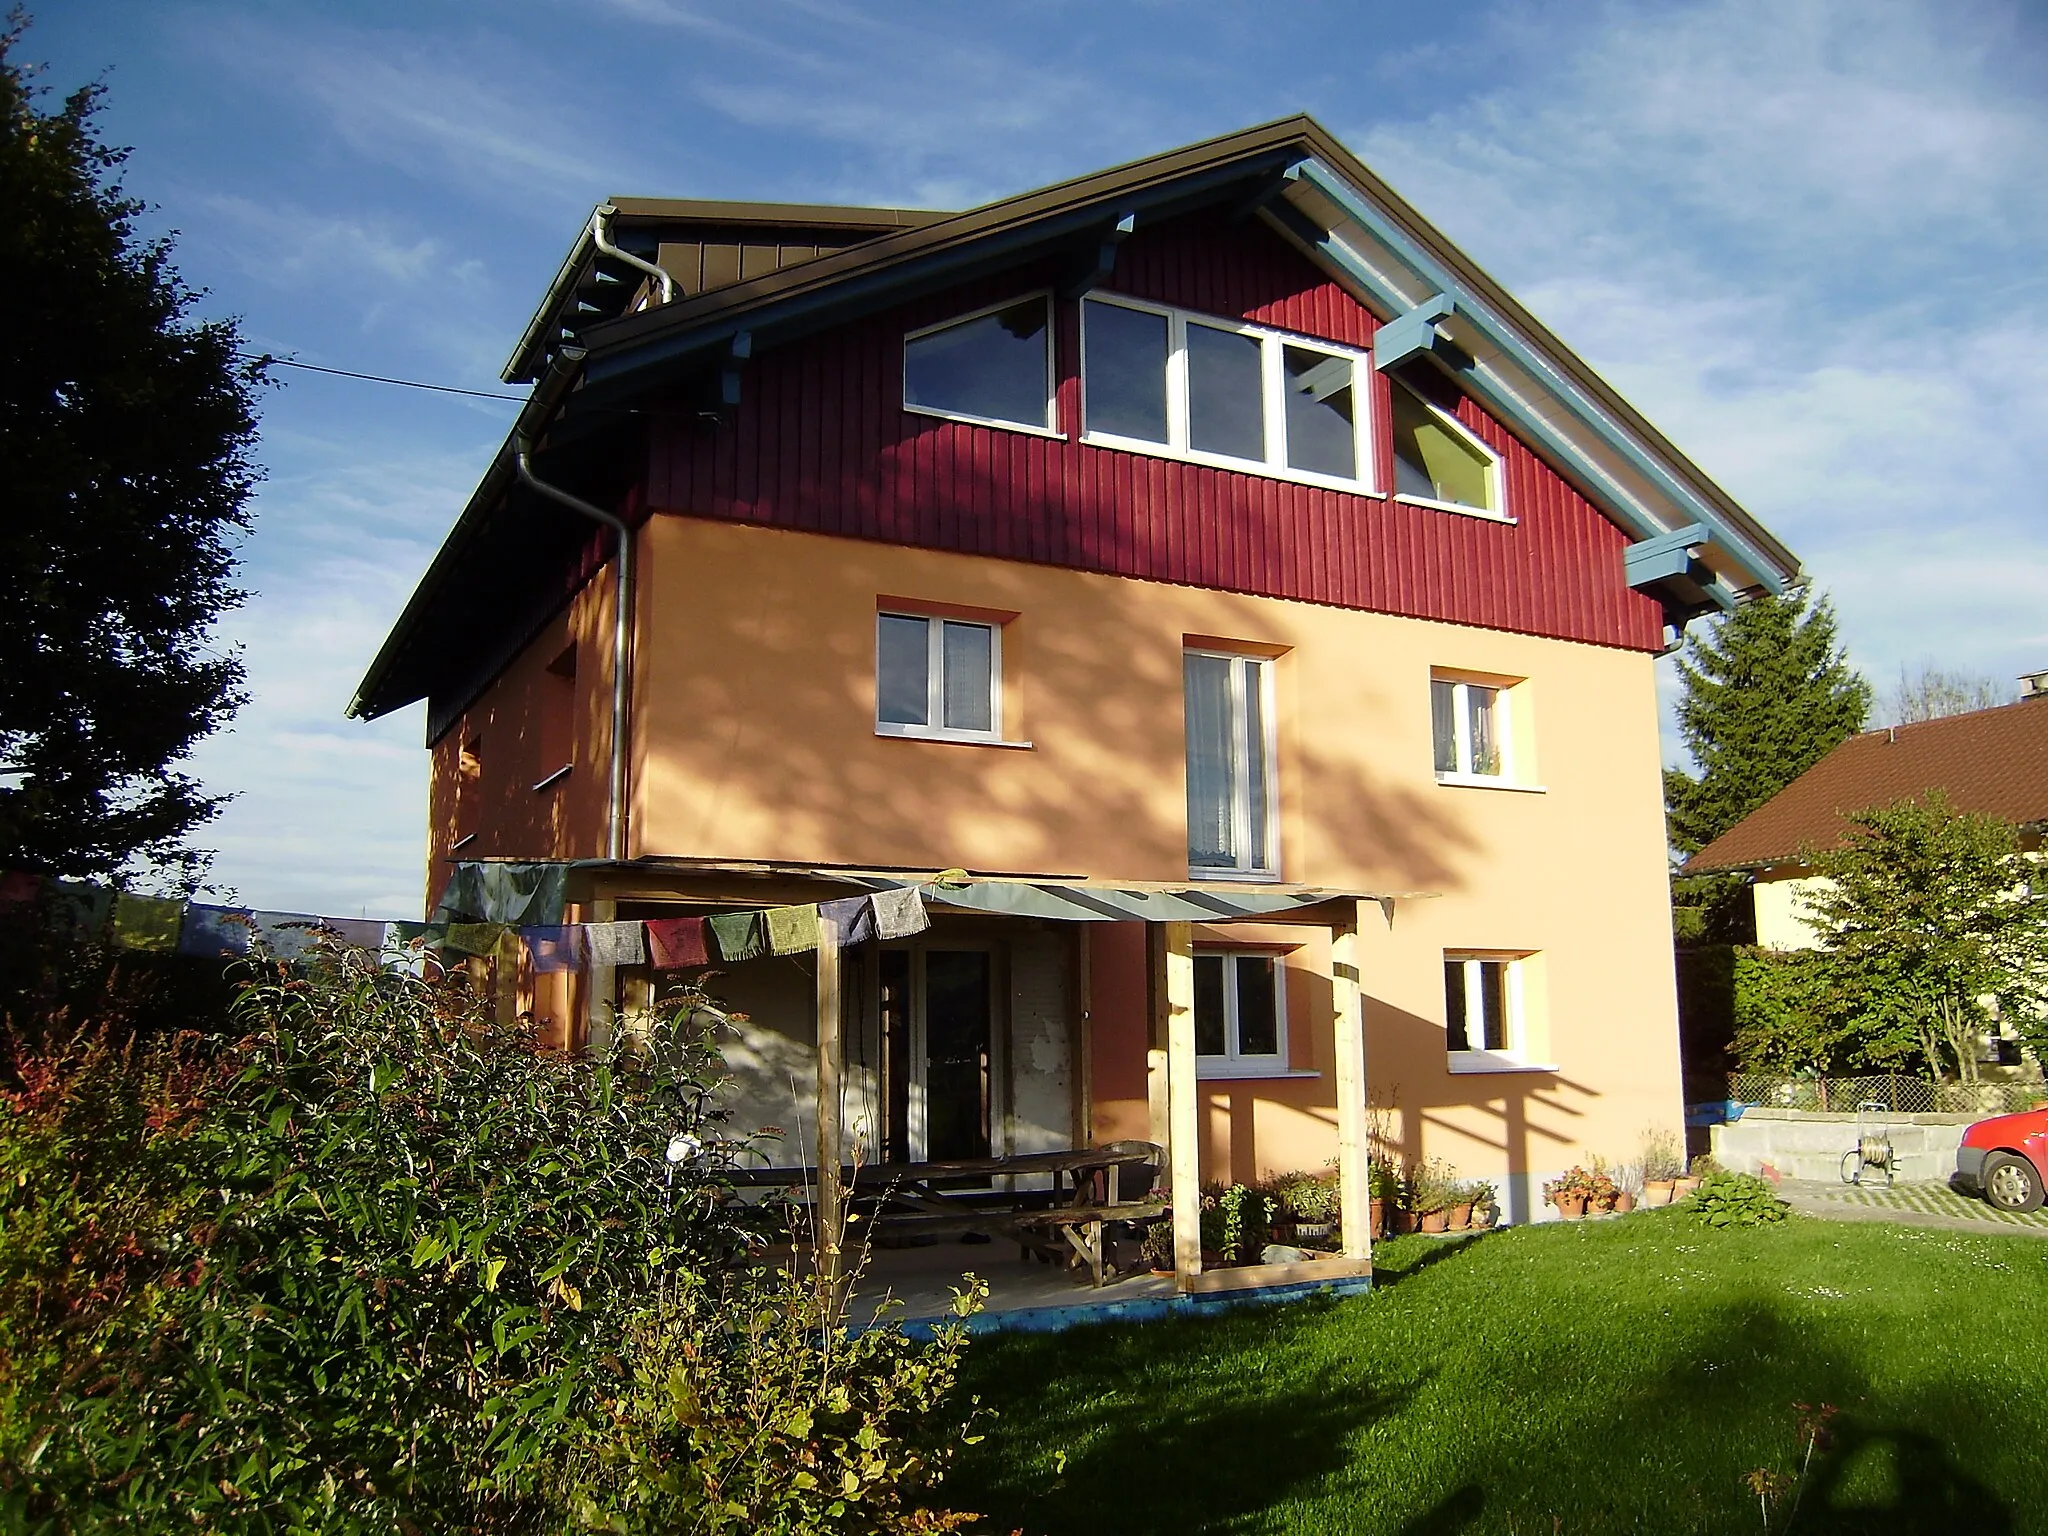 Photo showing: Wohnhaus 1 für Zollpersonal in Neuhaus bei Scheidegg iA, Baumeister Bufler